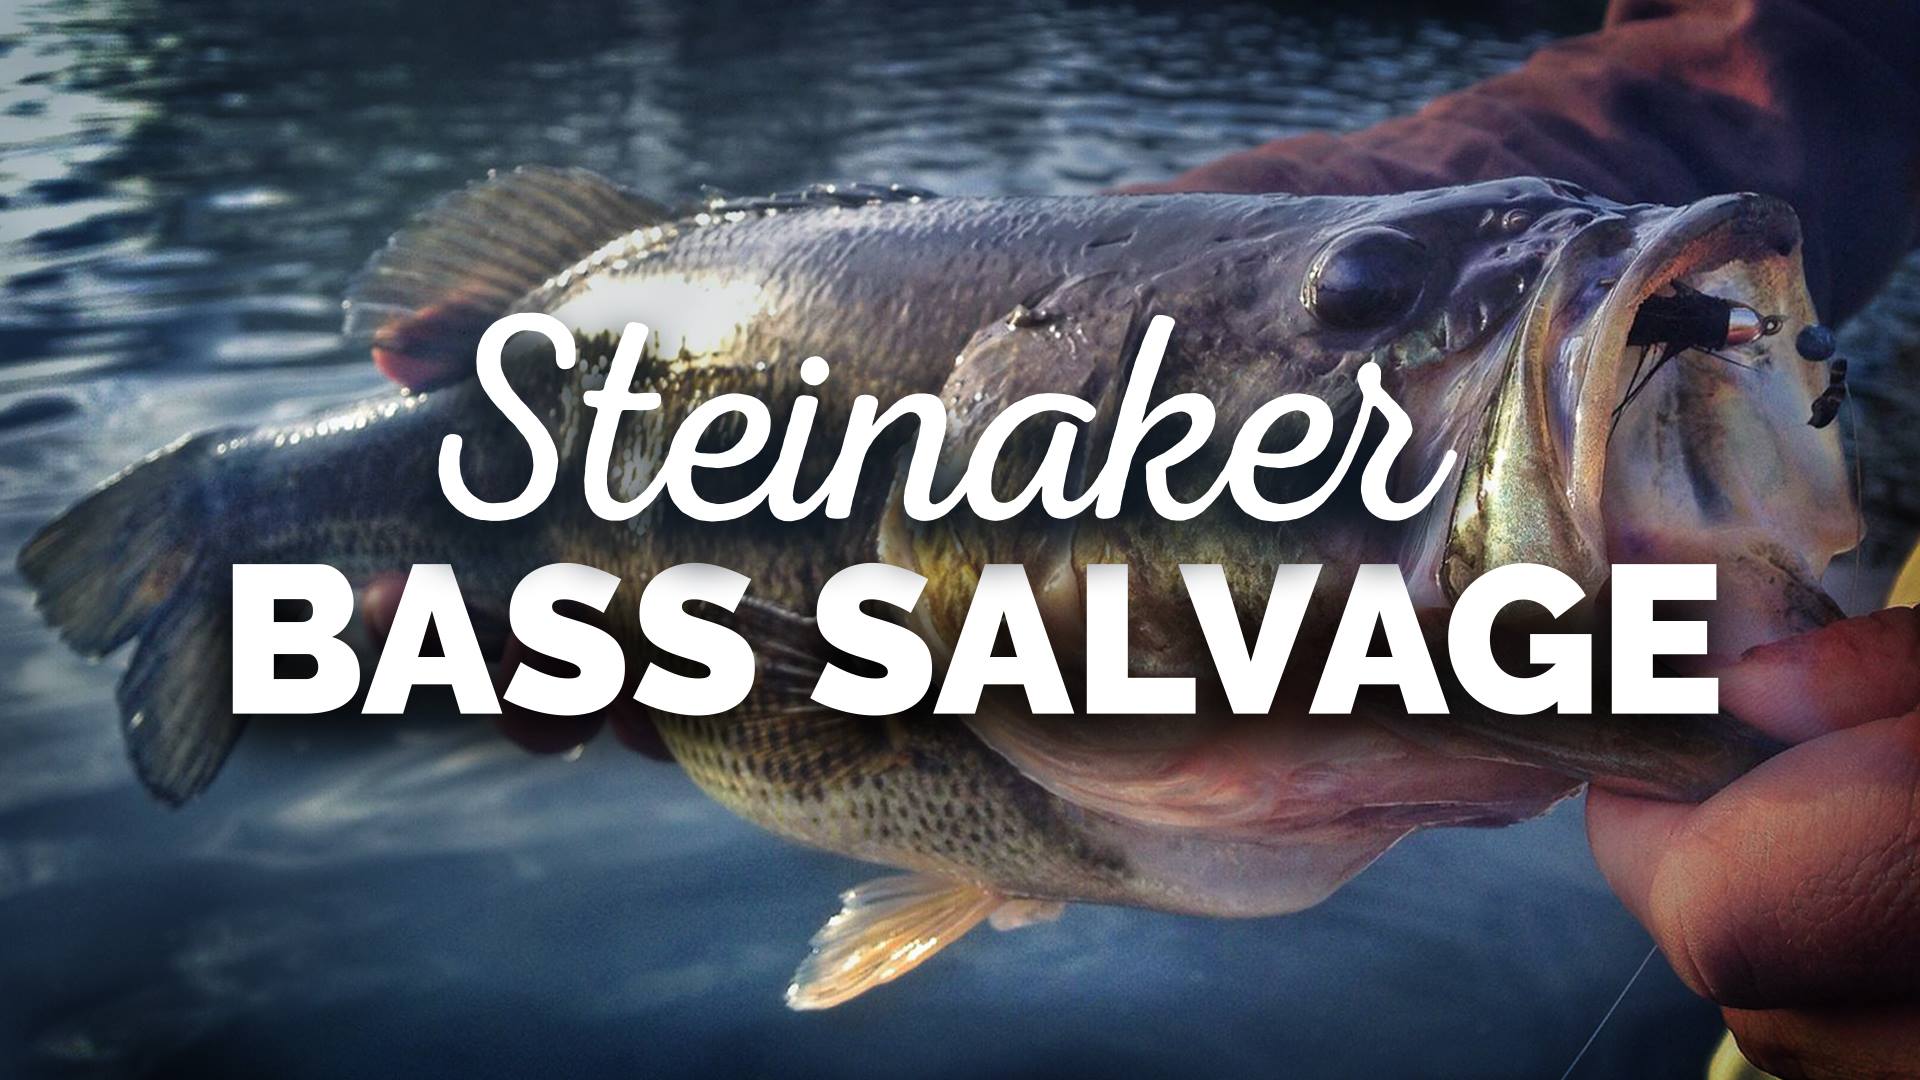 steinaker bass salvage